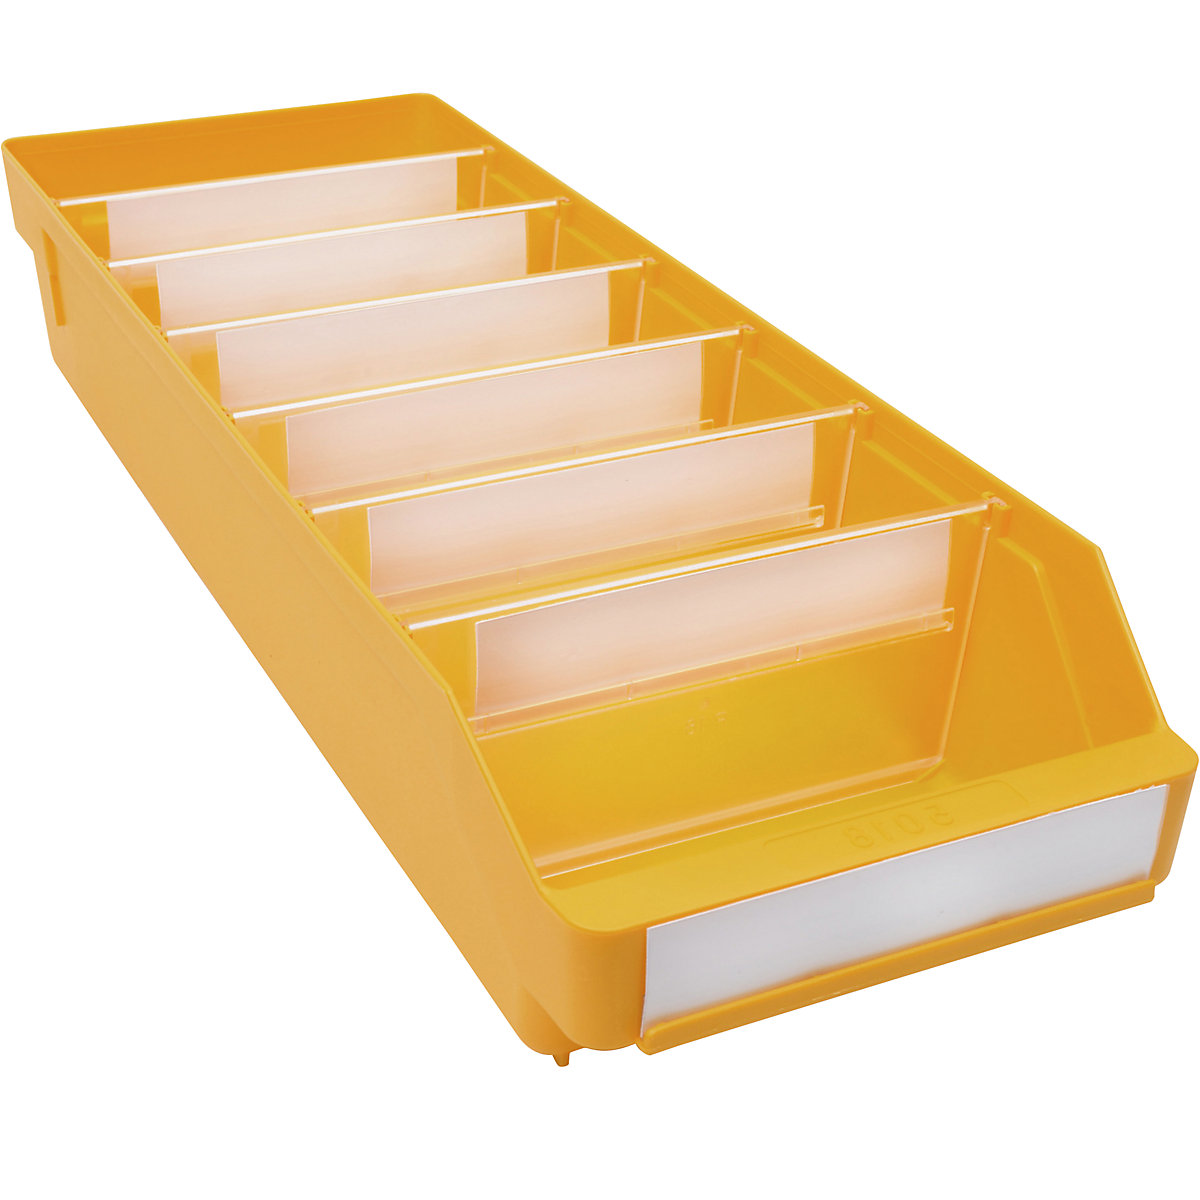 Bac de stockage en polypropylène résistant aux chocs – STEMO, coloris jaune, L x l x h 500 x 180 x 95 mm, lot de 20-12